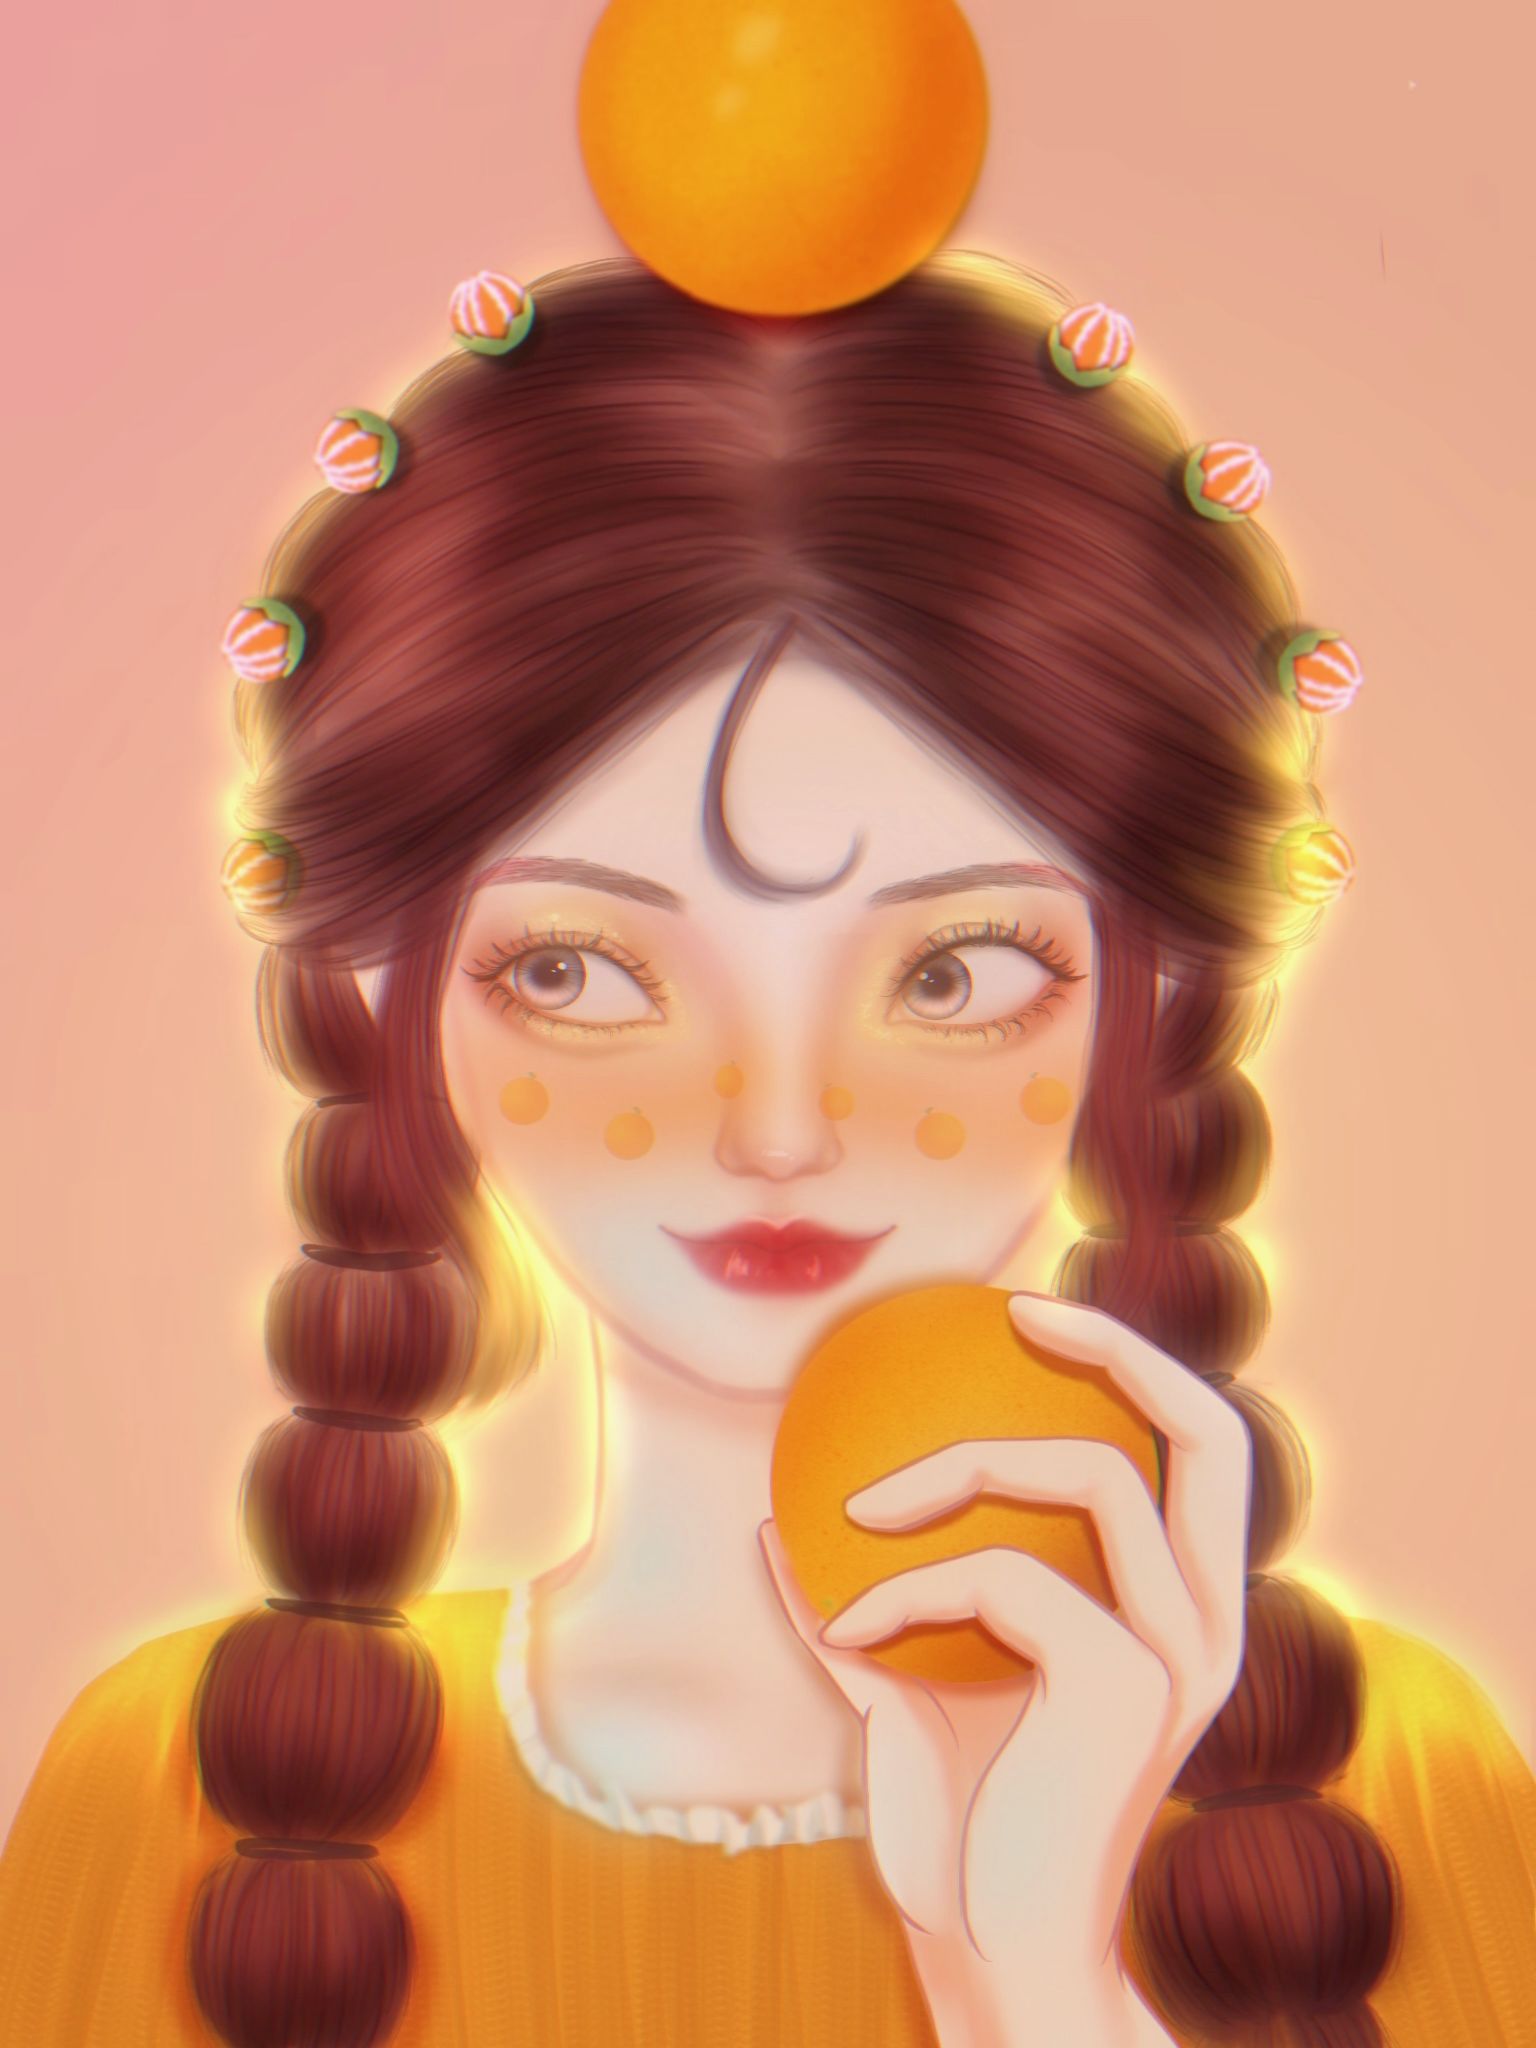 橘子-橘子竖图